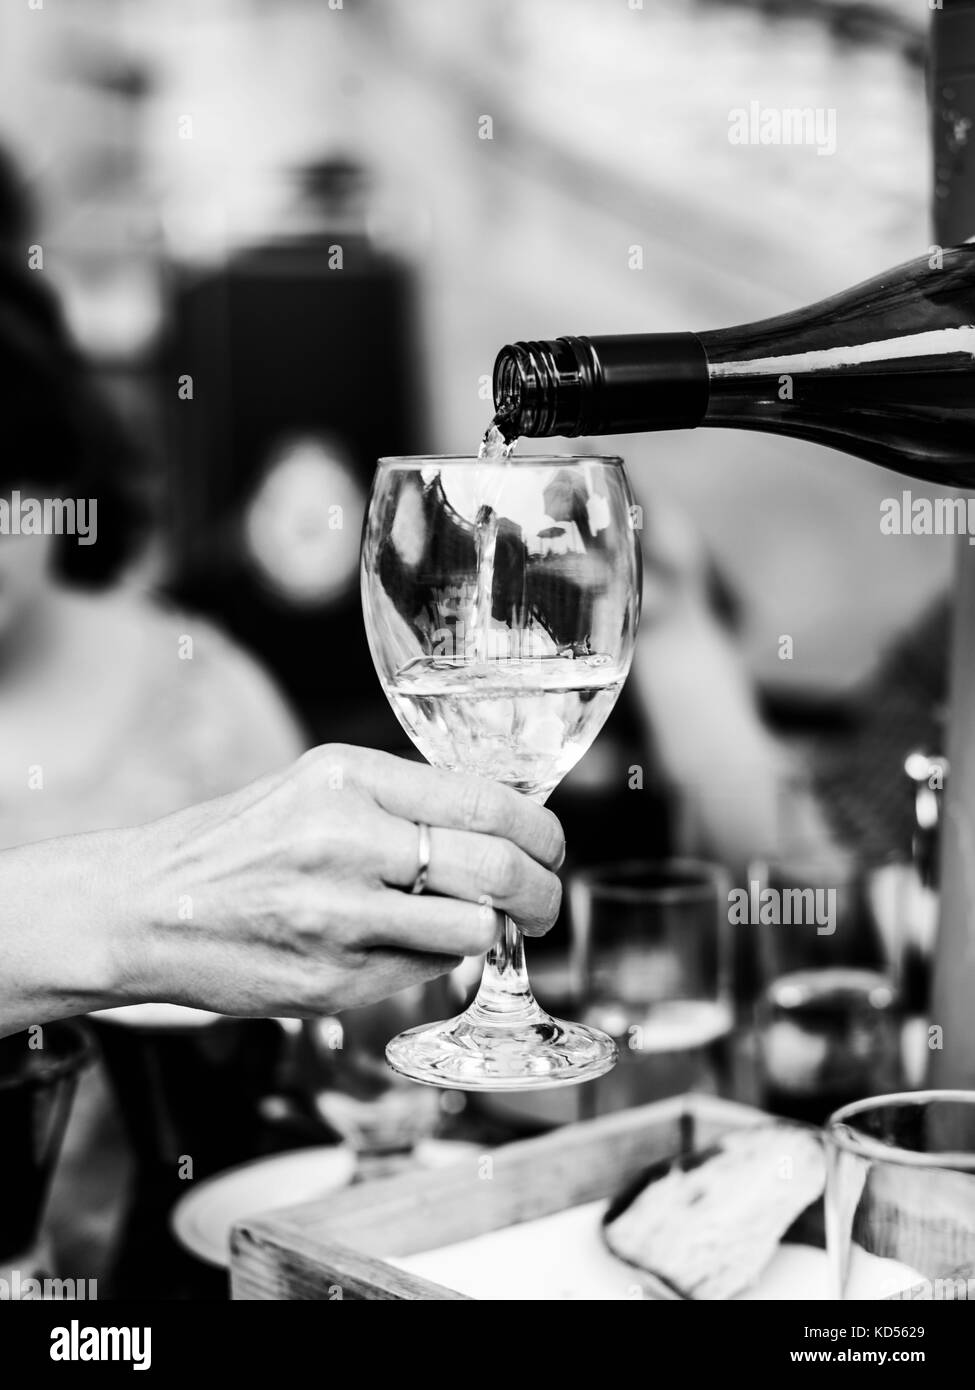 L'image monochrome noir et blanc de verser le vin blanc dans un verre à vin d'une bouteille dans un paramètre extérieur ou ourdoor Banque D'Images